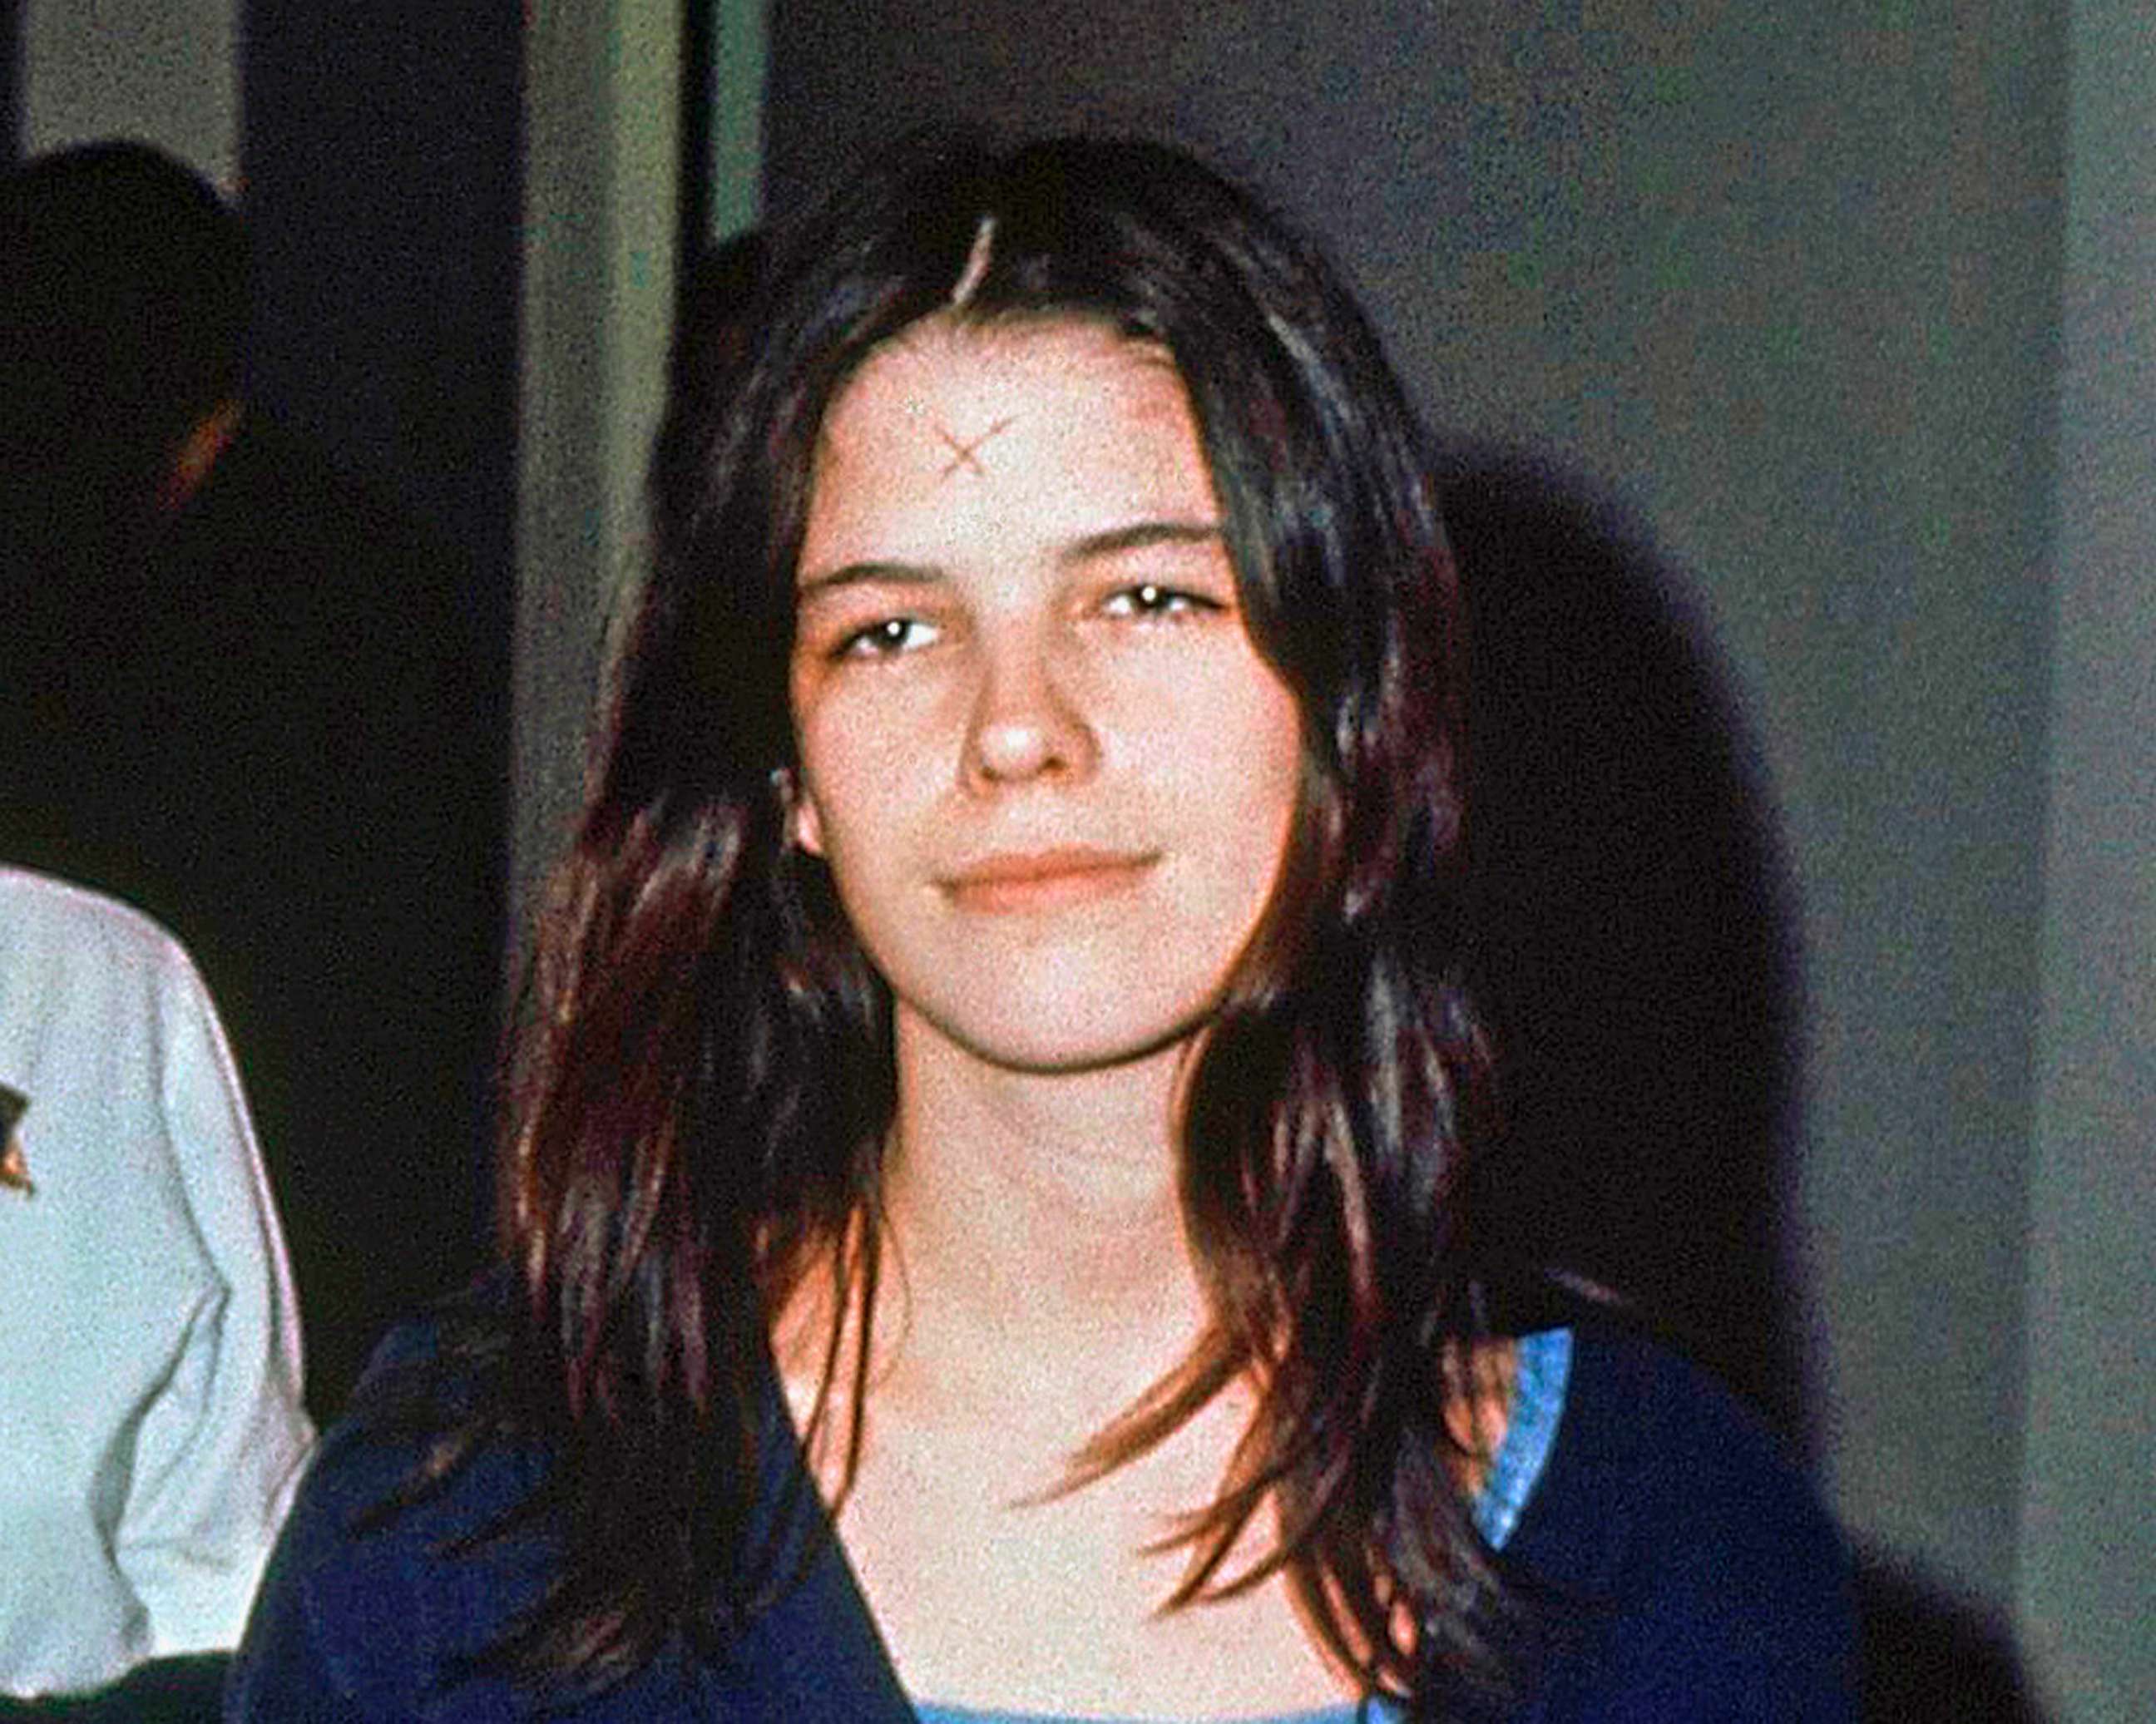 PHOTO: Leslie Van Houten in a Los Angeles jail, March 29, 1971.